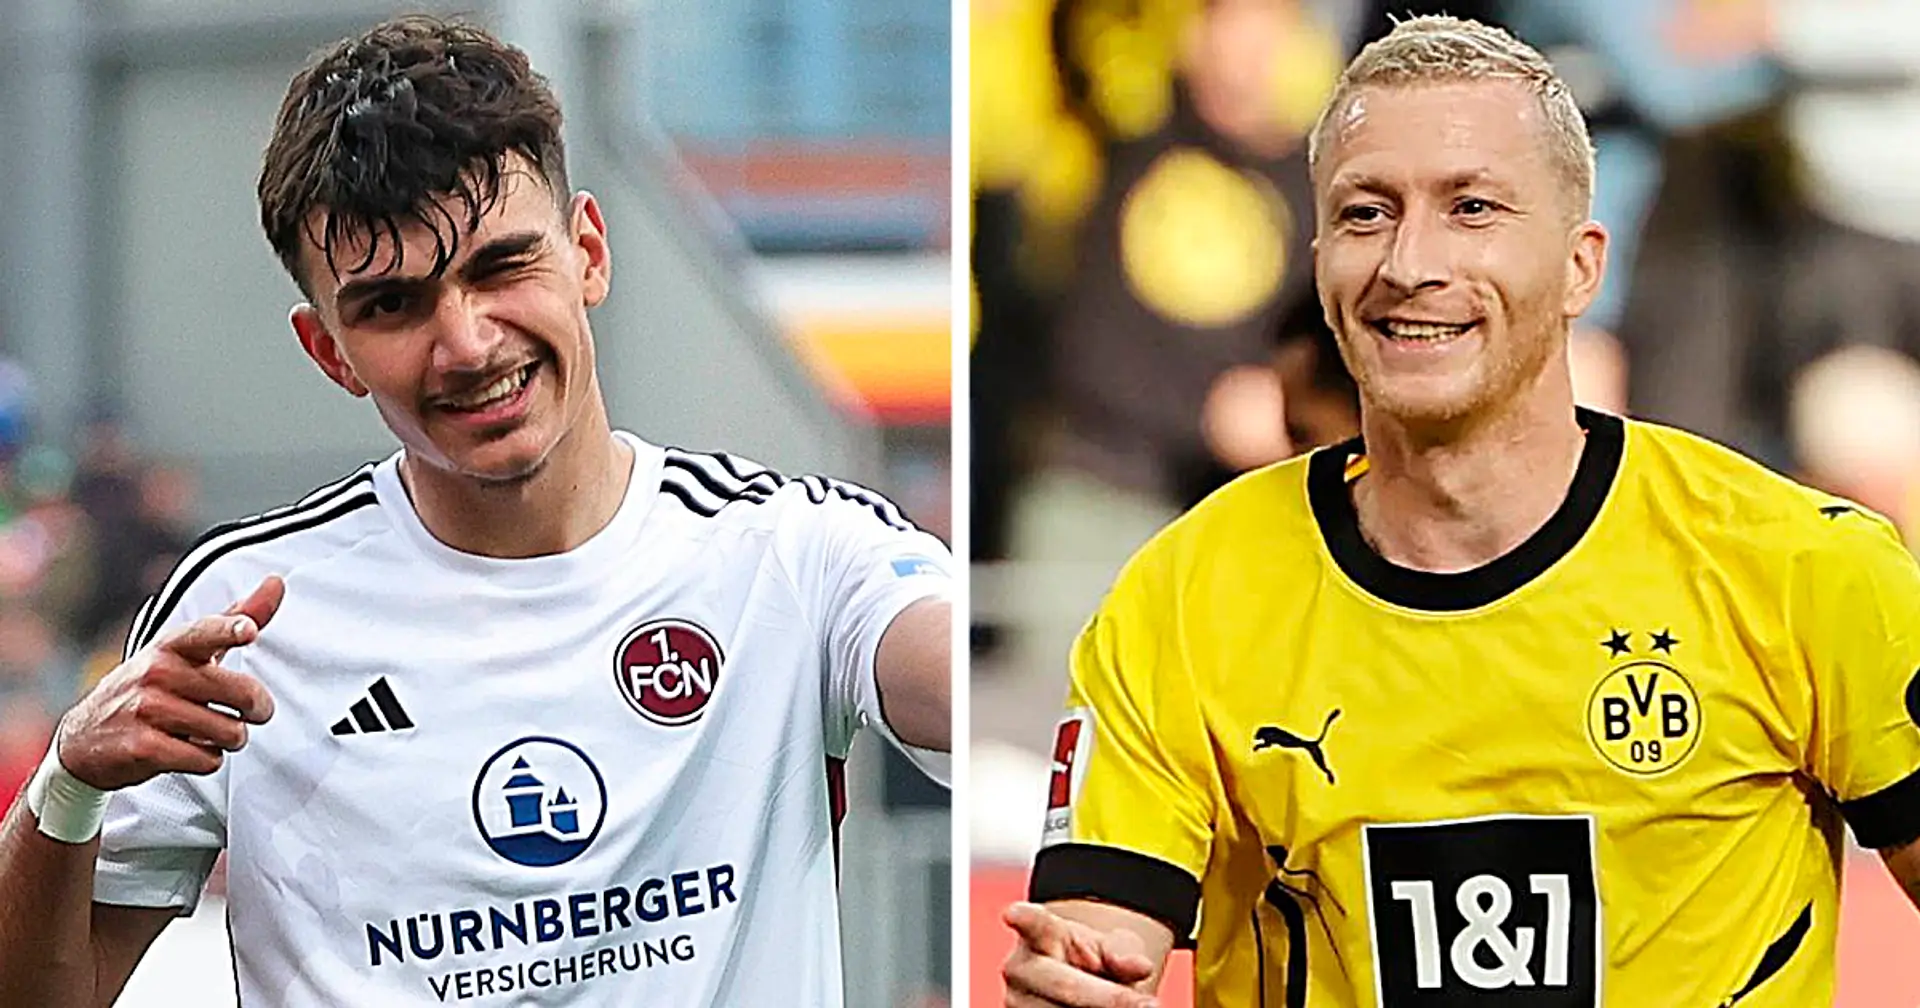 BVB-Fans sehen Uzun als Reus-Ersatz skeptisch: "Vielleicht finden unsere Bosse einen Hummels-Ersatz in der B-Jugend von Holstein Kiel?"